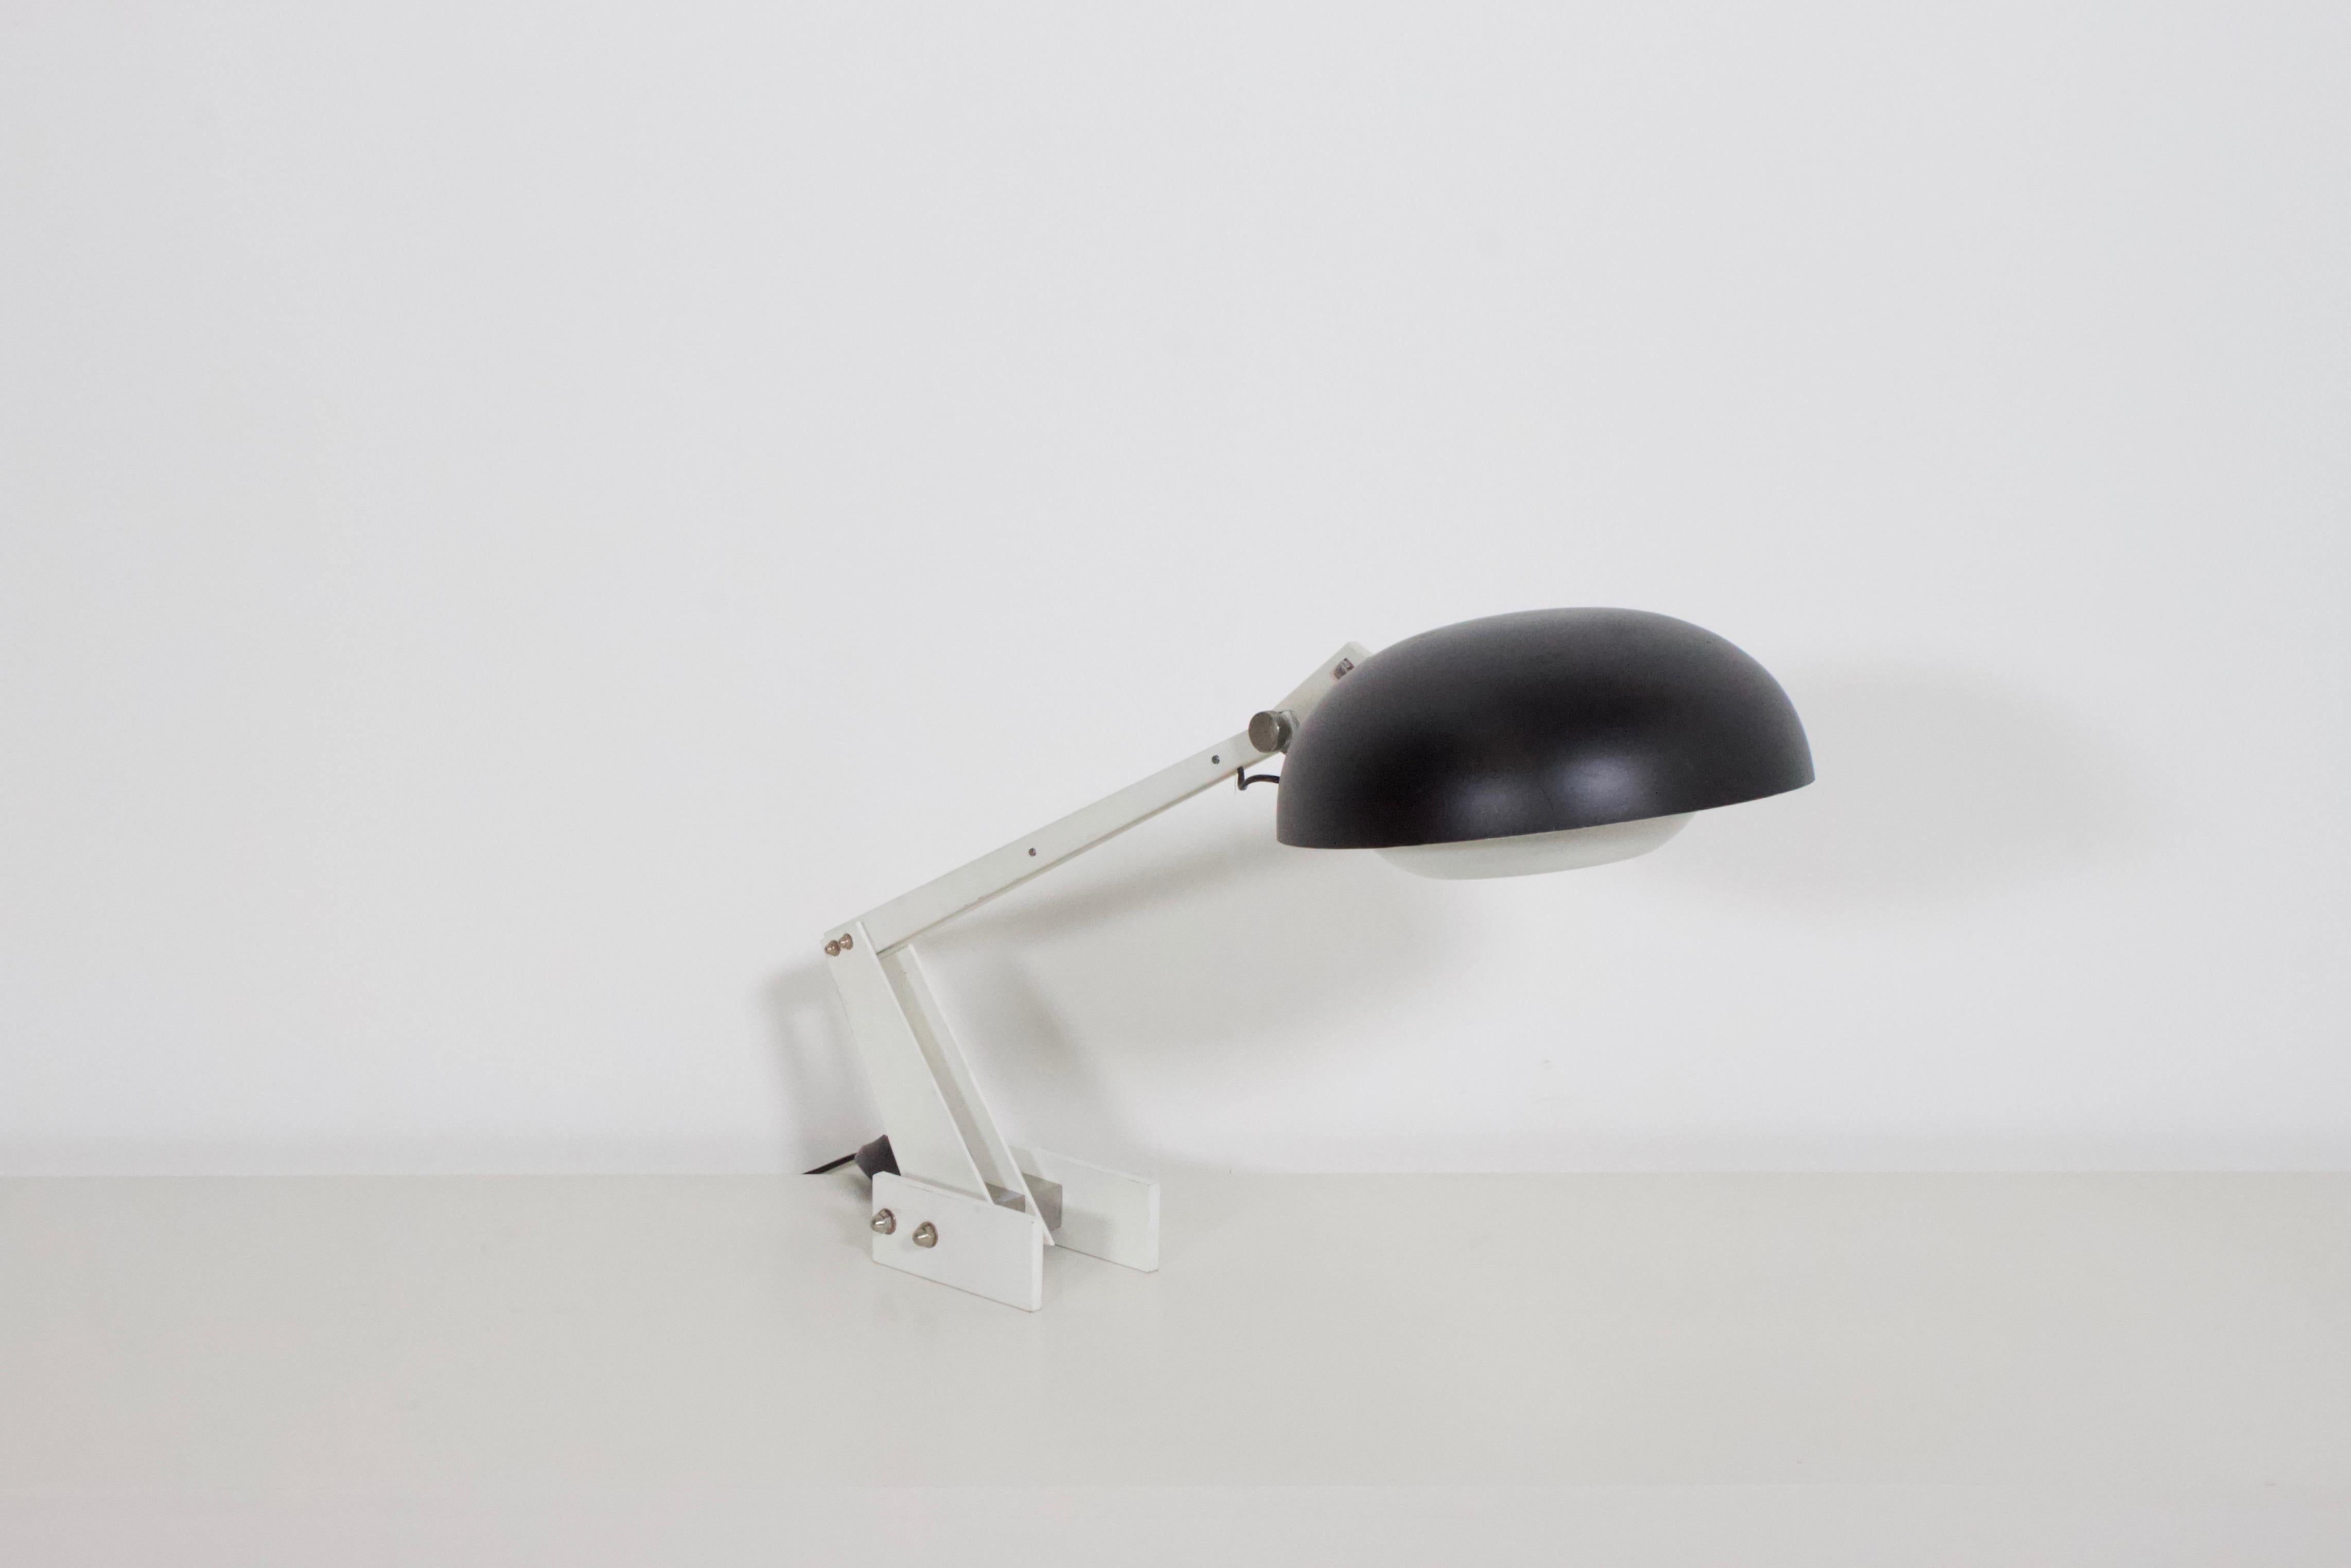 Très rare lampe de table / bureau industrielle de Wim Rietveld en bon état.

Fabriqué par Gispen aux Pays-Bas.

Abat-jour en aluminium noir avec un diffuseur en aluminium blanc qui est réglable.

Cadre lourd en acier émaillé, assemblé par des